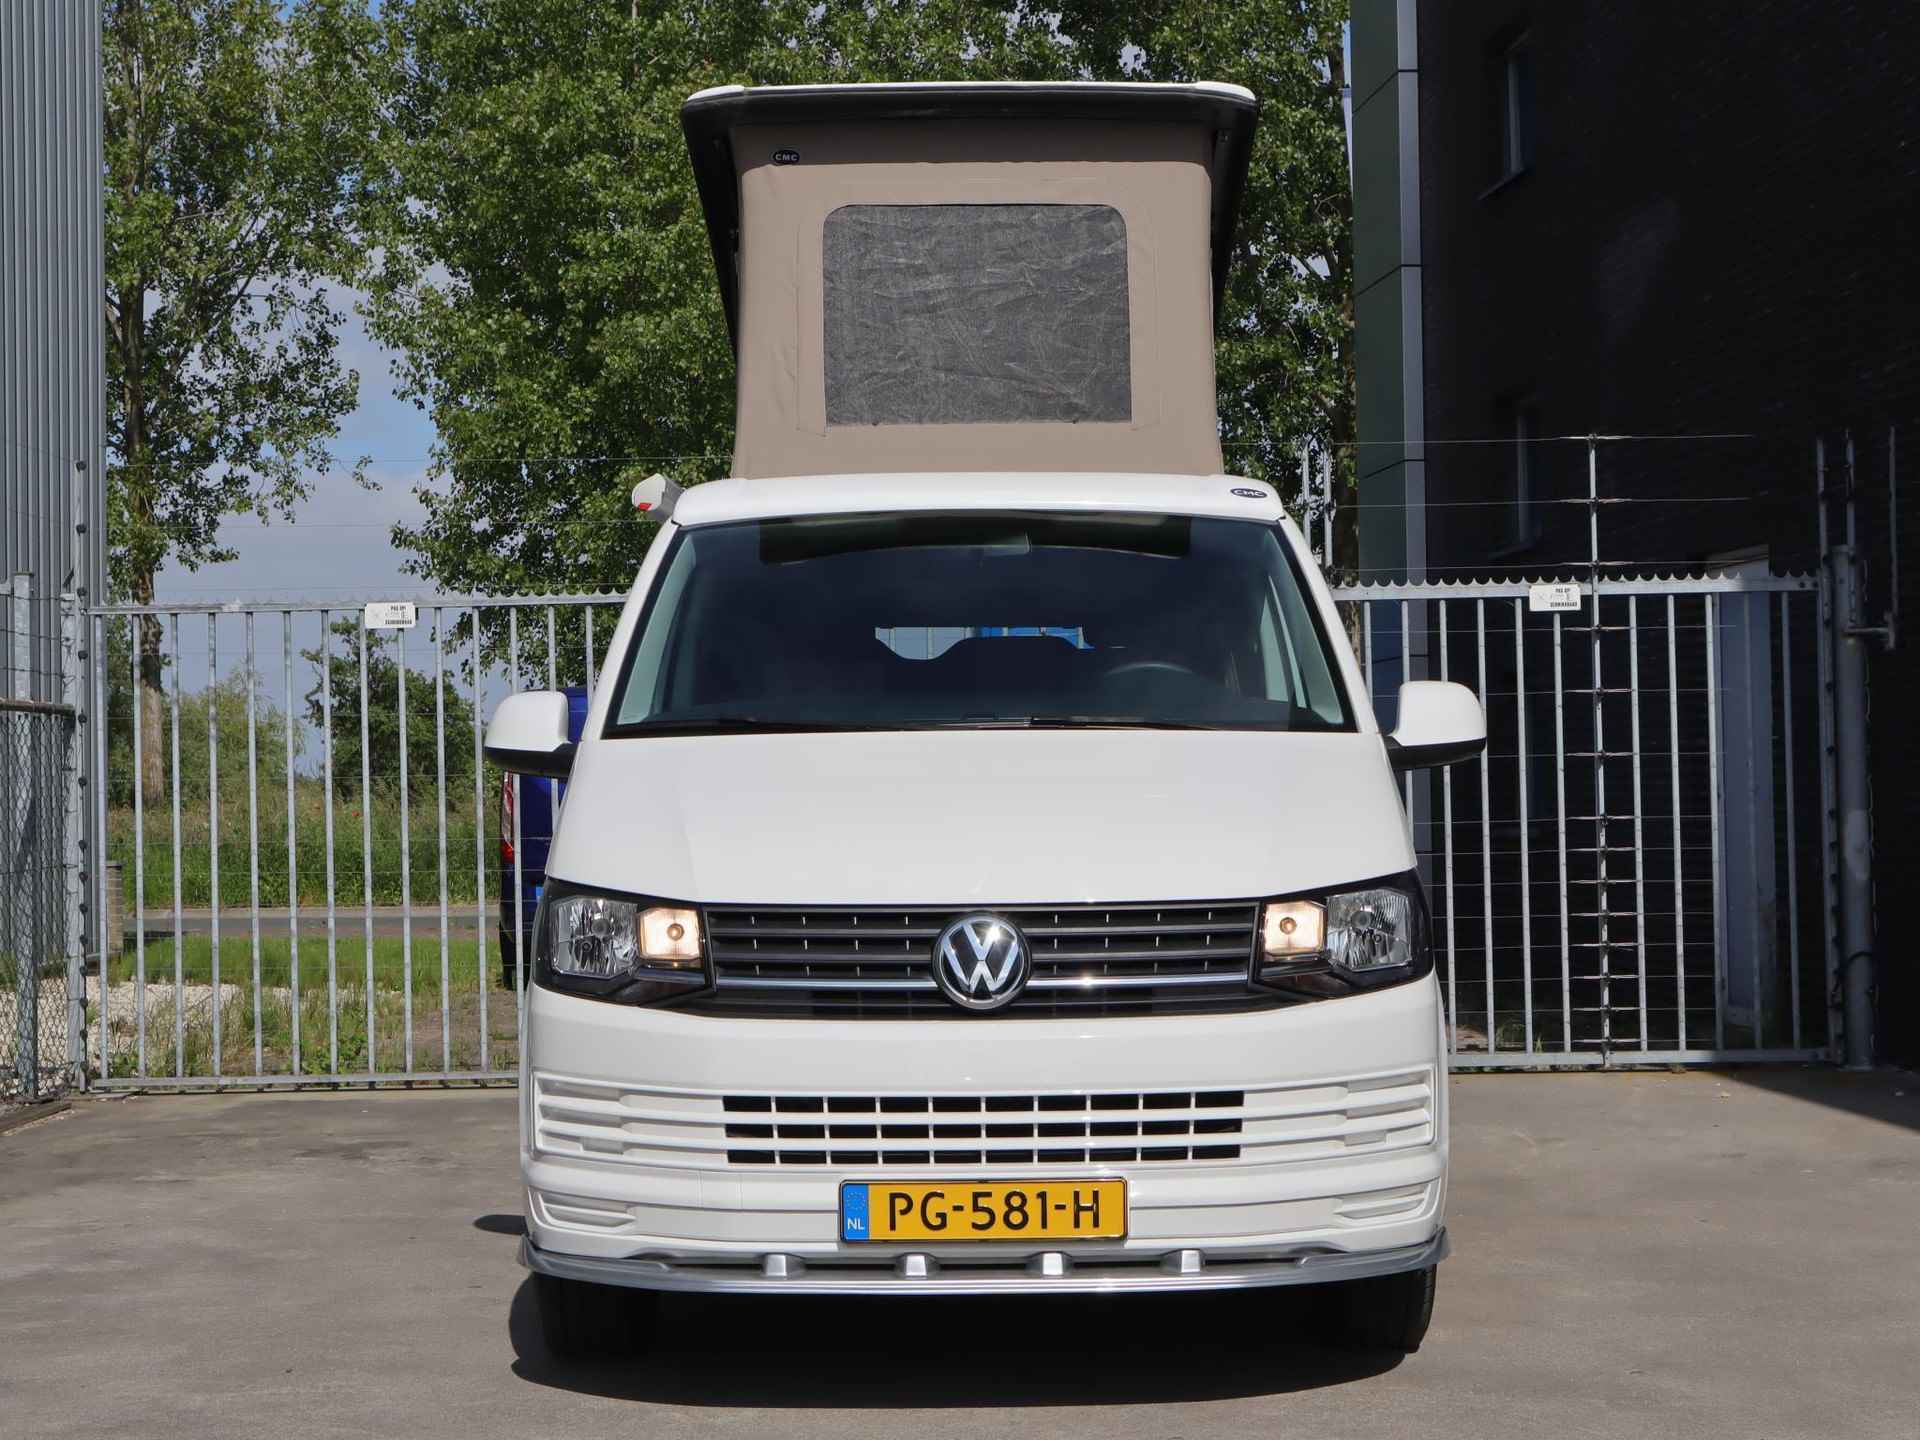 Volkswagen Transporter Kombi 2.0 TDI L1H1 140PK | 4 persoons Camper | Keuken met gasfornuis, wasbak en koelkast | Zonnescherm | Draaistoel RV | Houten interieur | Radio | Cruise control | Custom voorbumper | Horren zijkant en achter - 3/47